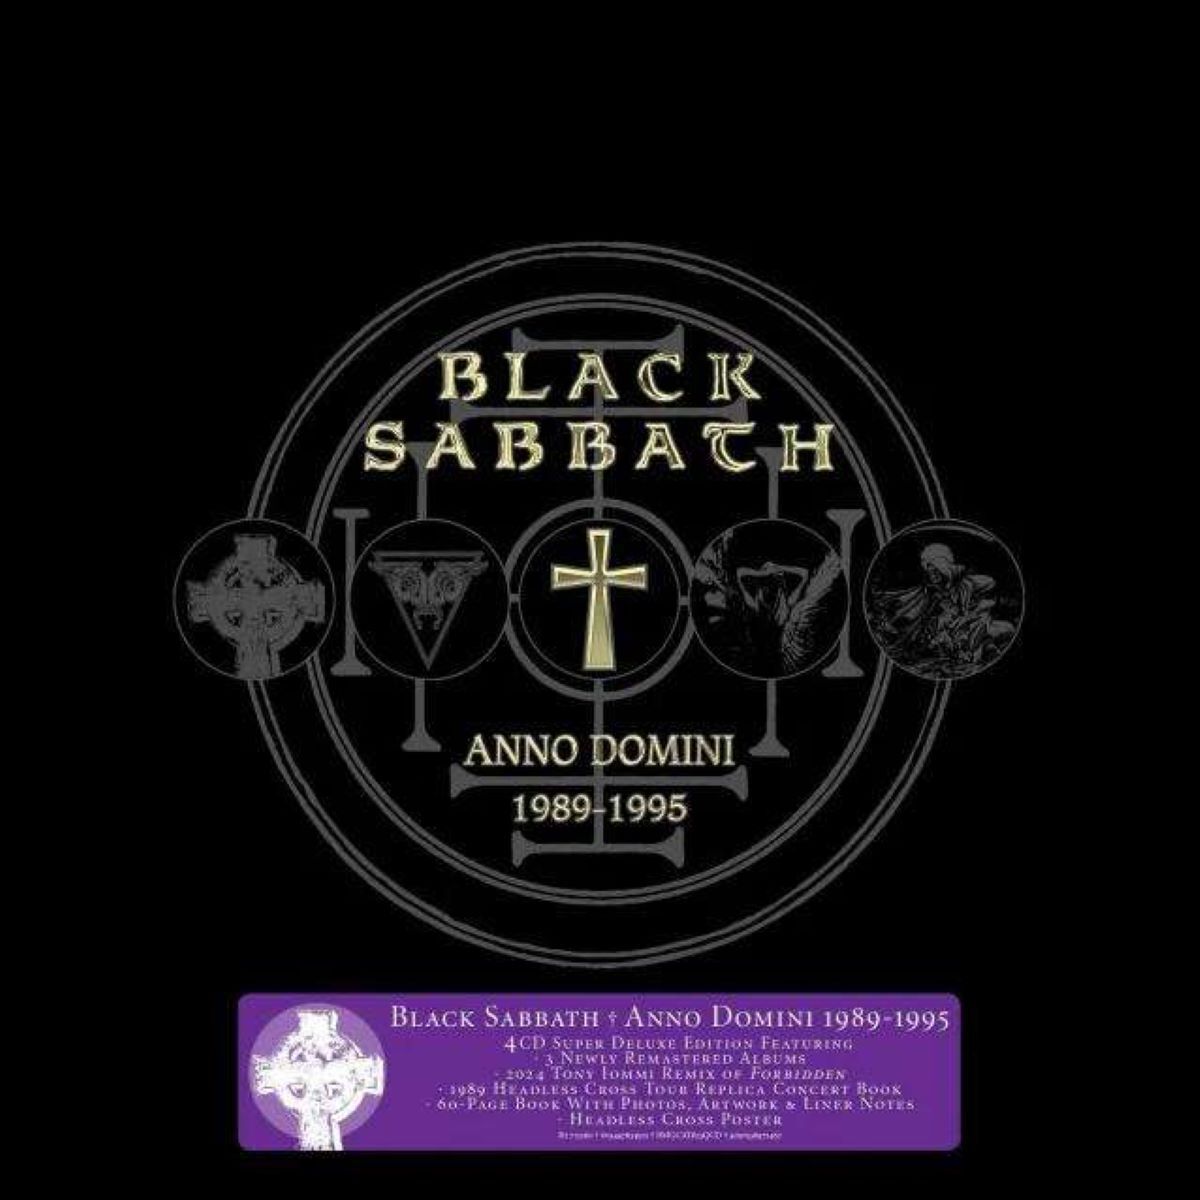 Black Sabbath Anno Domini: 1989 - 1995 CD multicolor